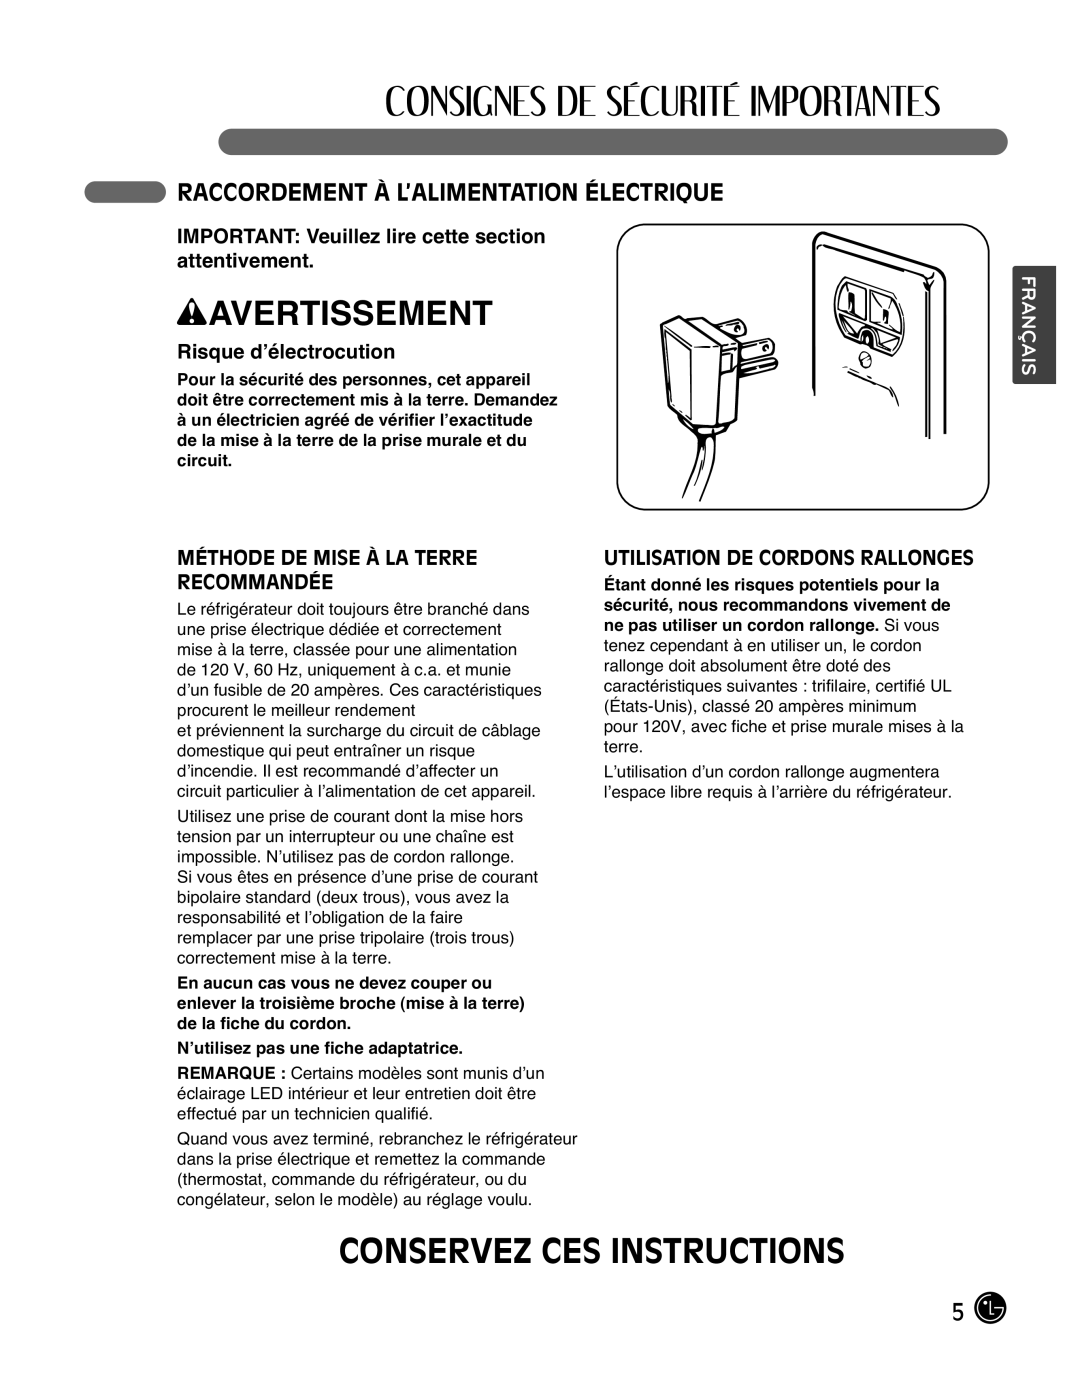 LG Electronics LMX25988ST Conservez Ces Instructions, Raccordement À L’Alimentation Électrique, Risque d’électrocution 